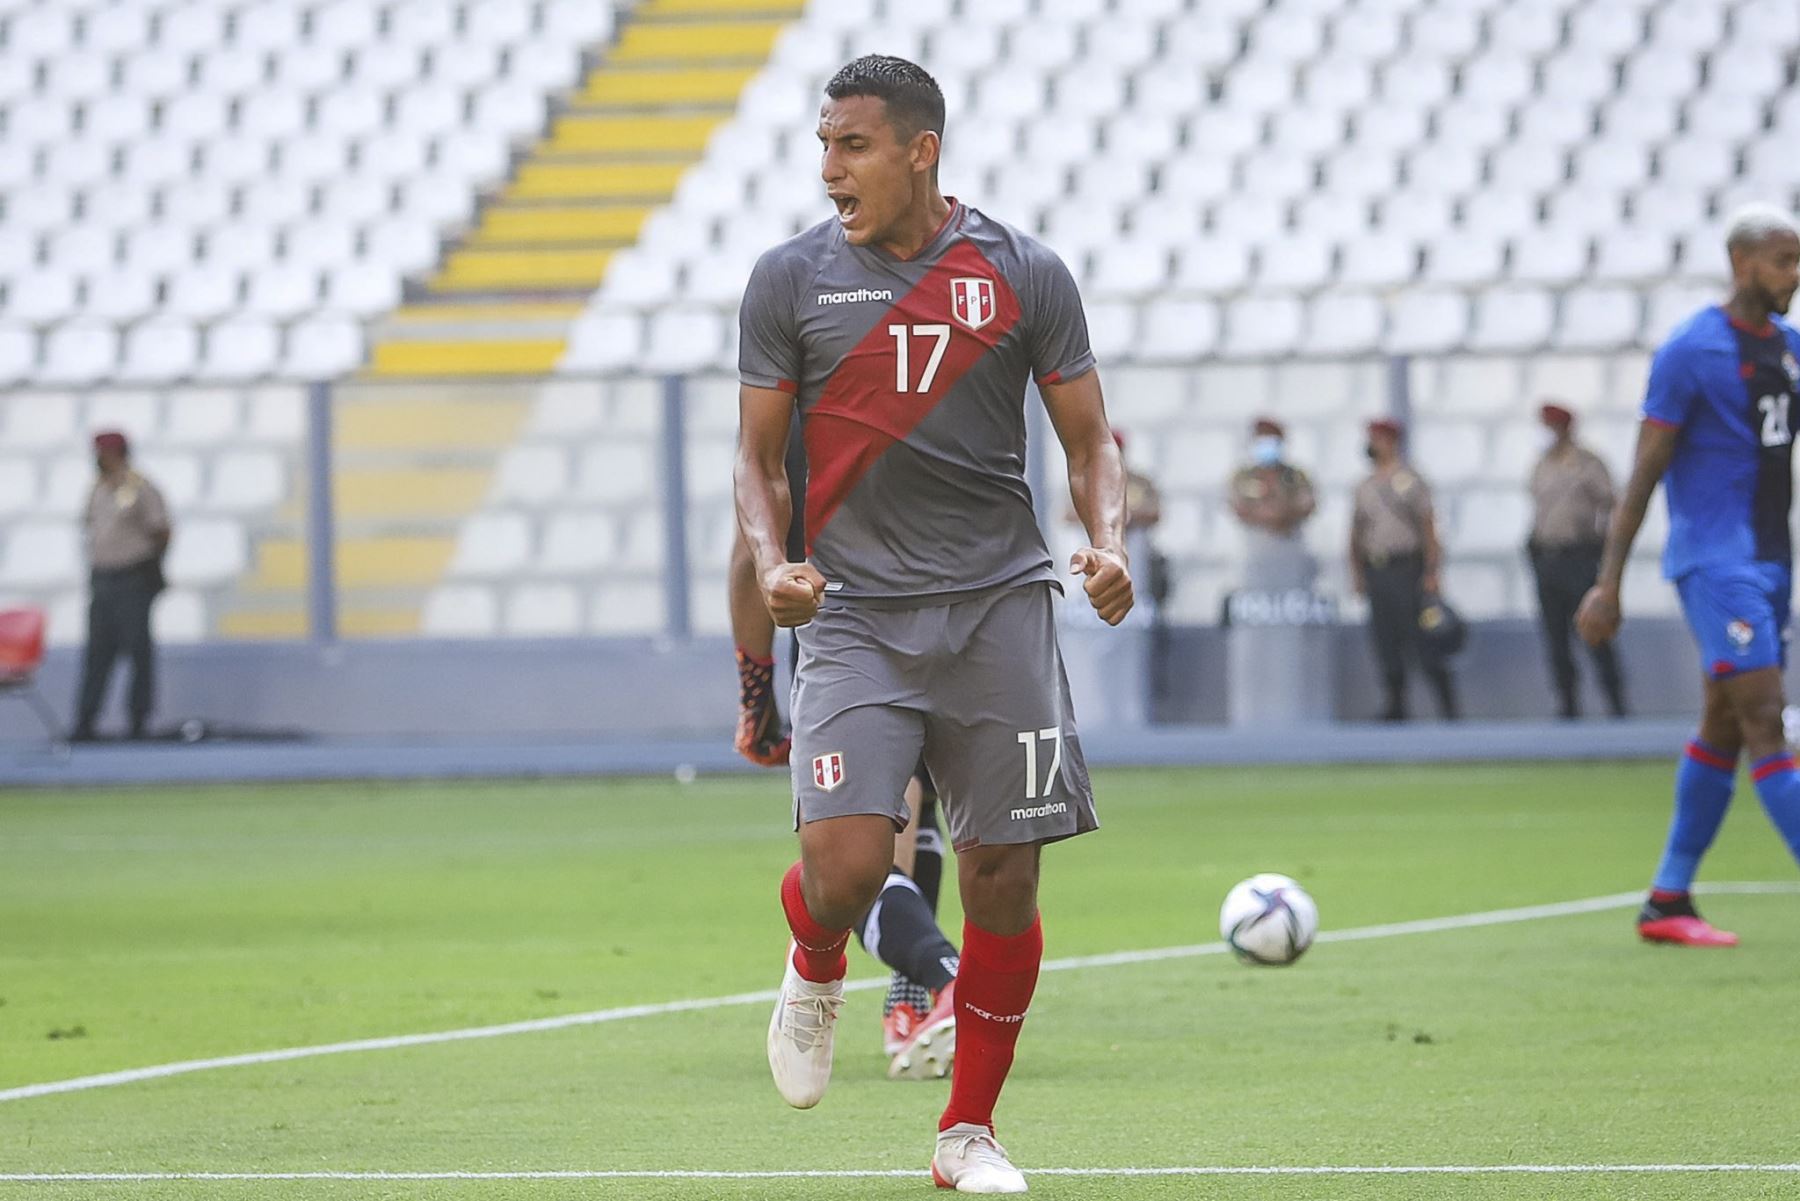 La selección peruana enfrenta a la selección de Panamá en un partido amistoso de preparación antes de enfrentar a Colombia por las eliminatorias a Catar 2022. Foto: FPF